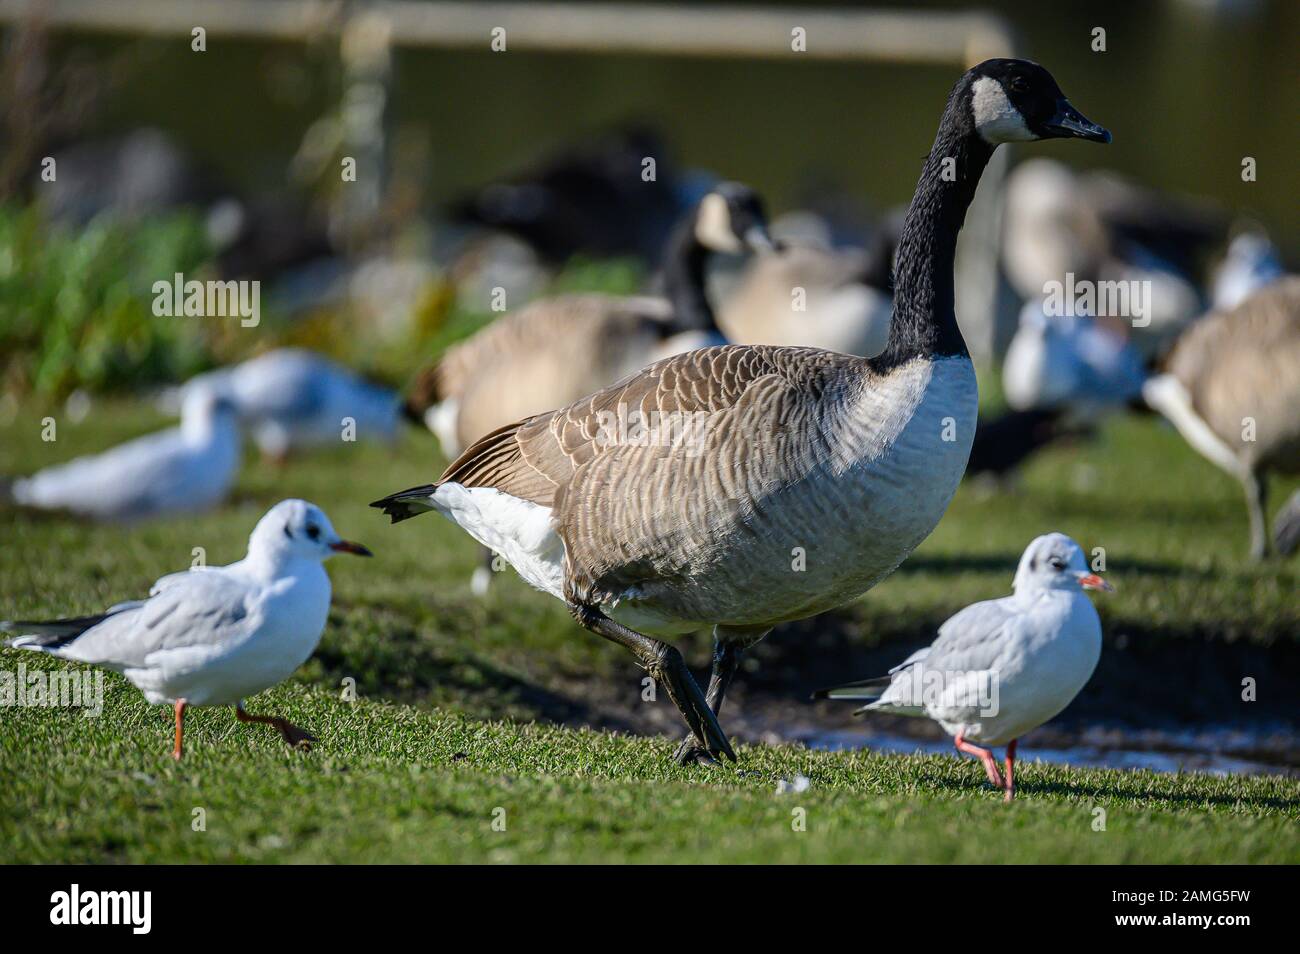 Canada Goose, Ashington, Northumberland, UK Stock Photo